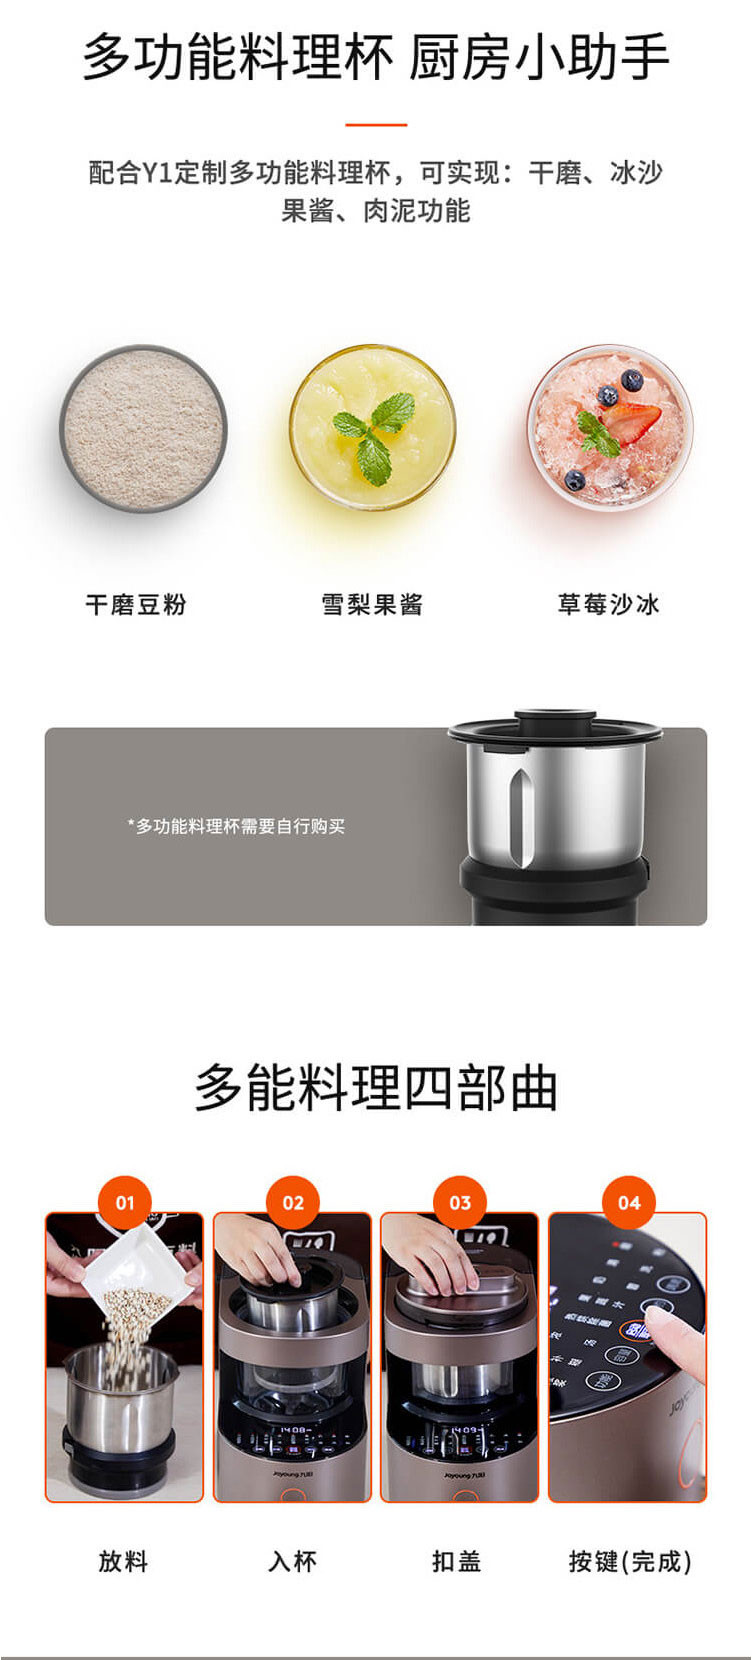 九阳/Joyoung Y1 全自动清洗静音 破壁机料理机榨汁机豆浆机